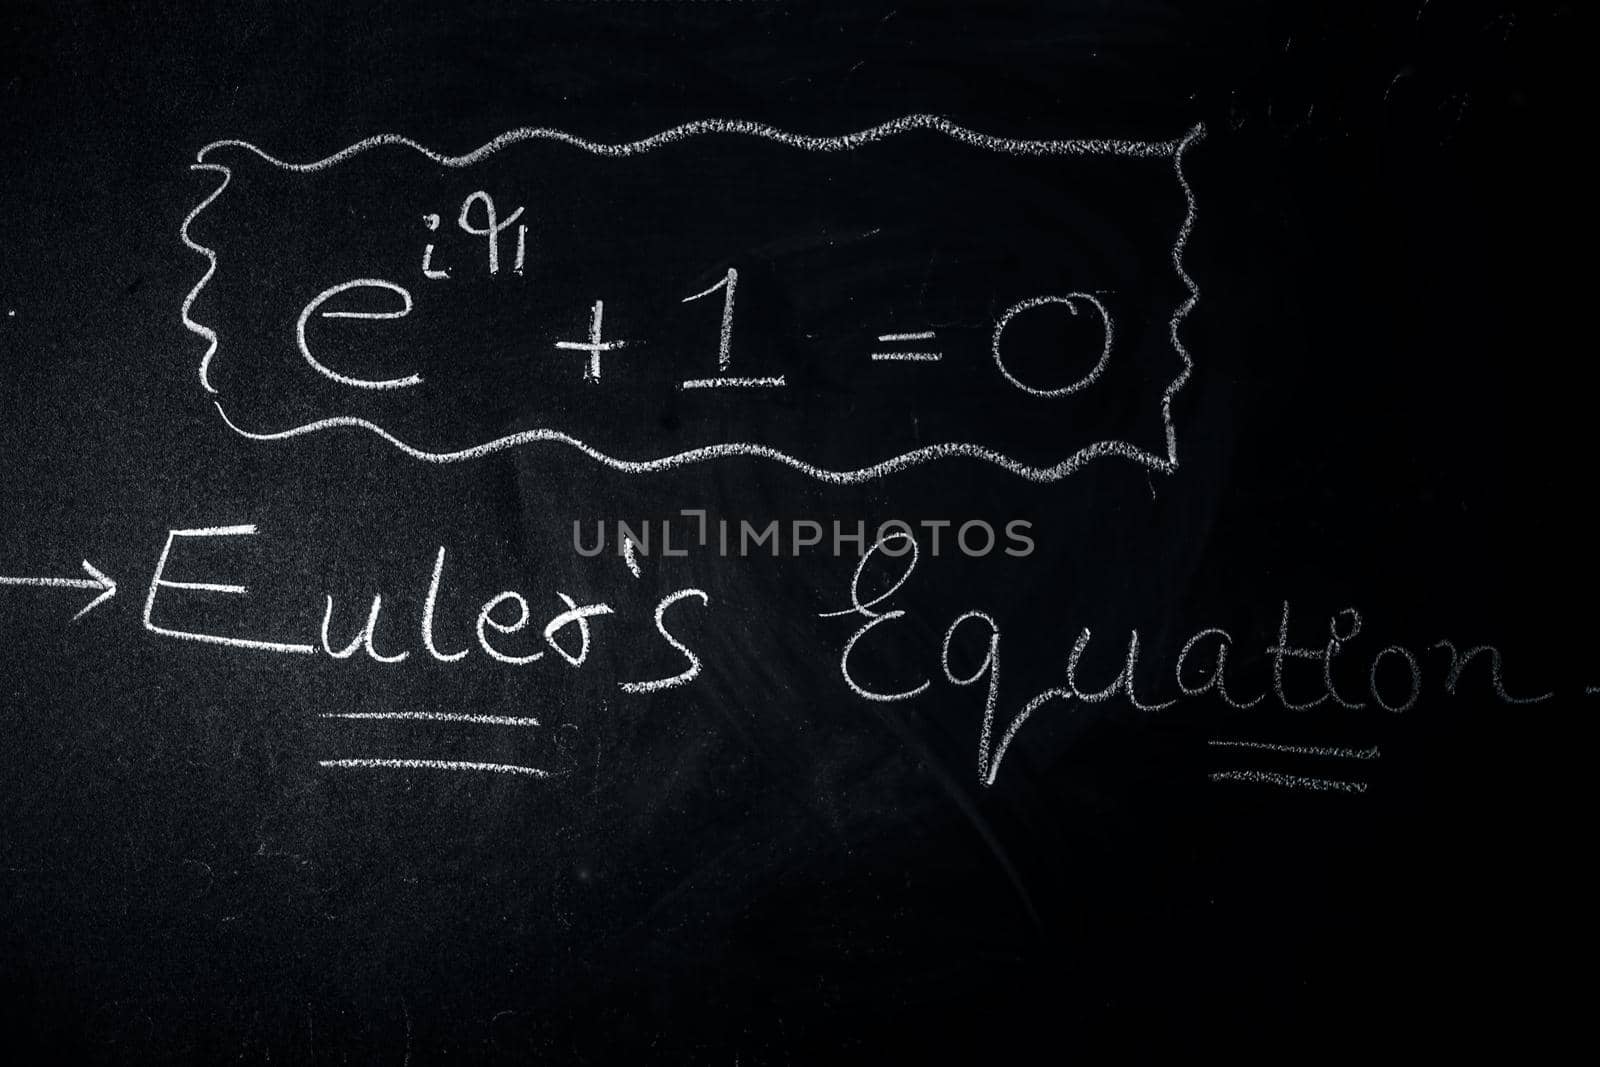 Shot of Euler's equation of Euler's identity or Euler's formula written on the blackboard.